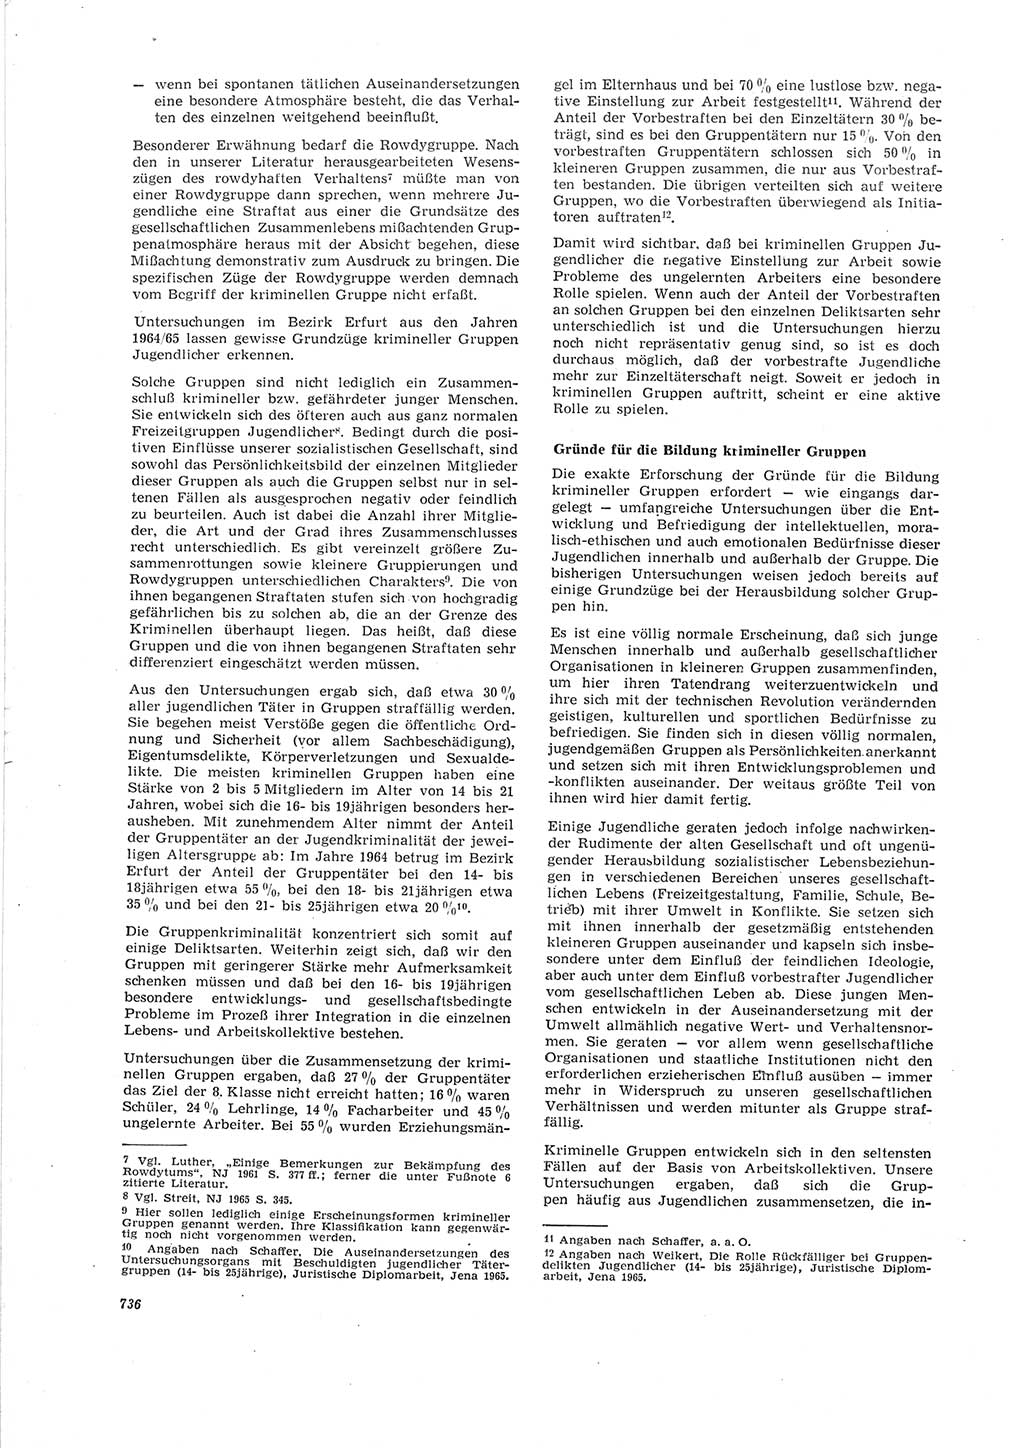 Neue Justiz (NJ), Zeitschrift für Recht und Rechtswissenschaft [Deutsche Demokratische Republik (DDR)], 19. Jahrgang 1965, Seite 736 (NJ DDR 1965, S. 736)